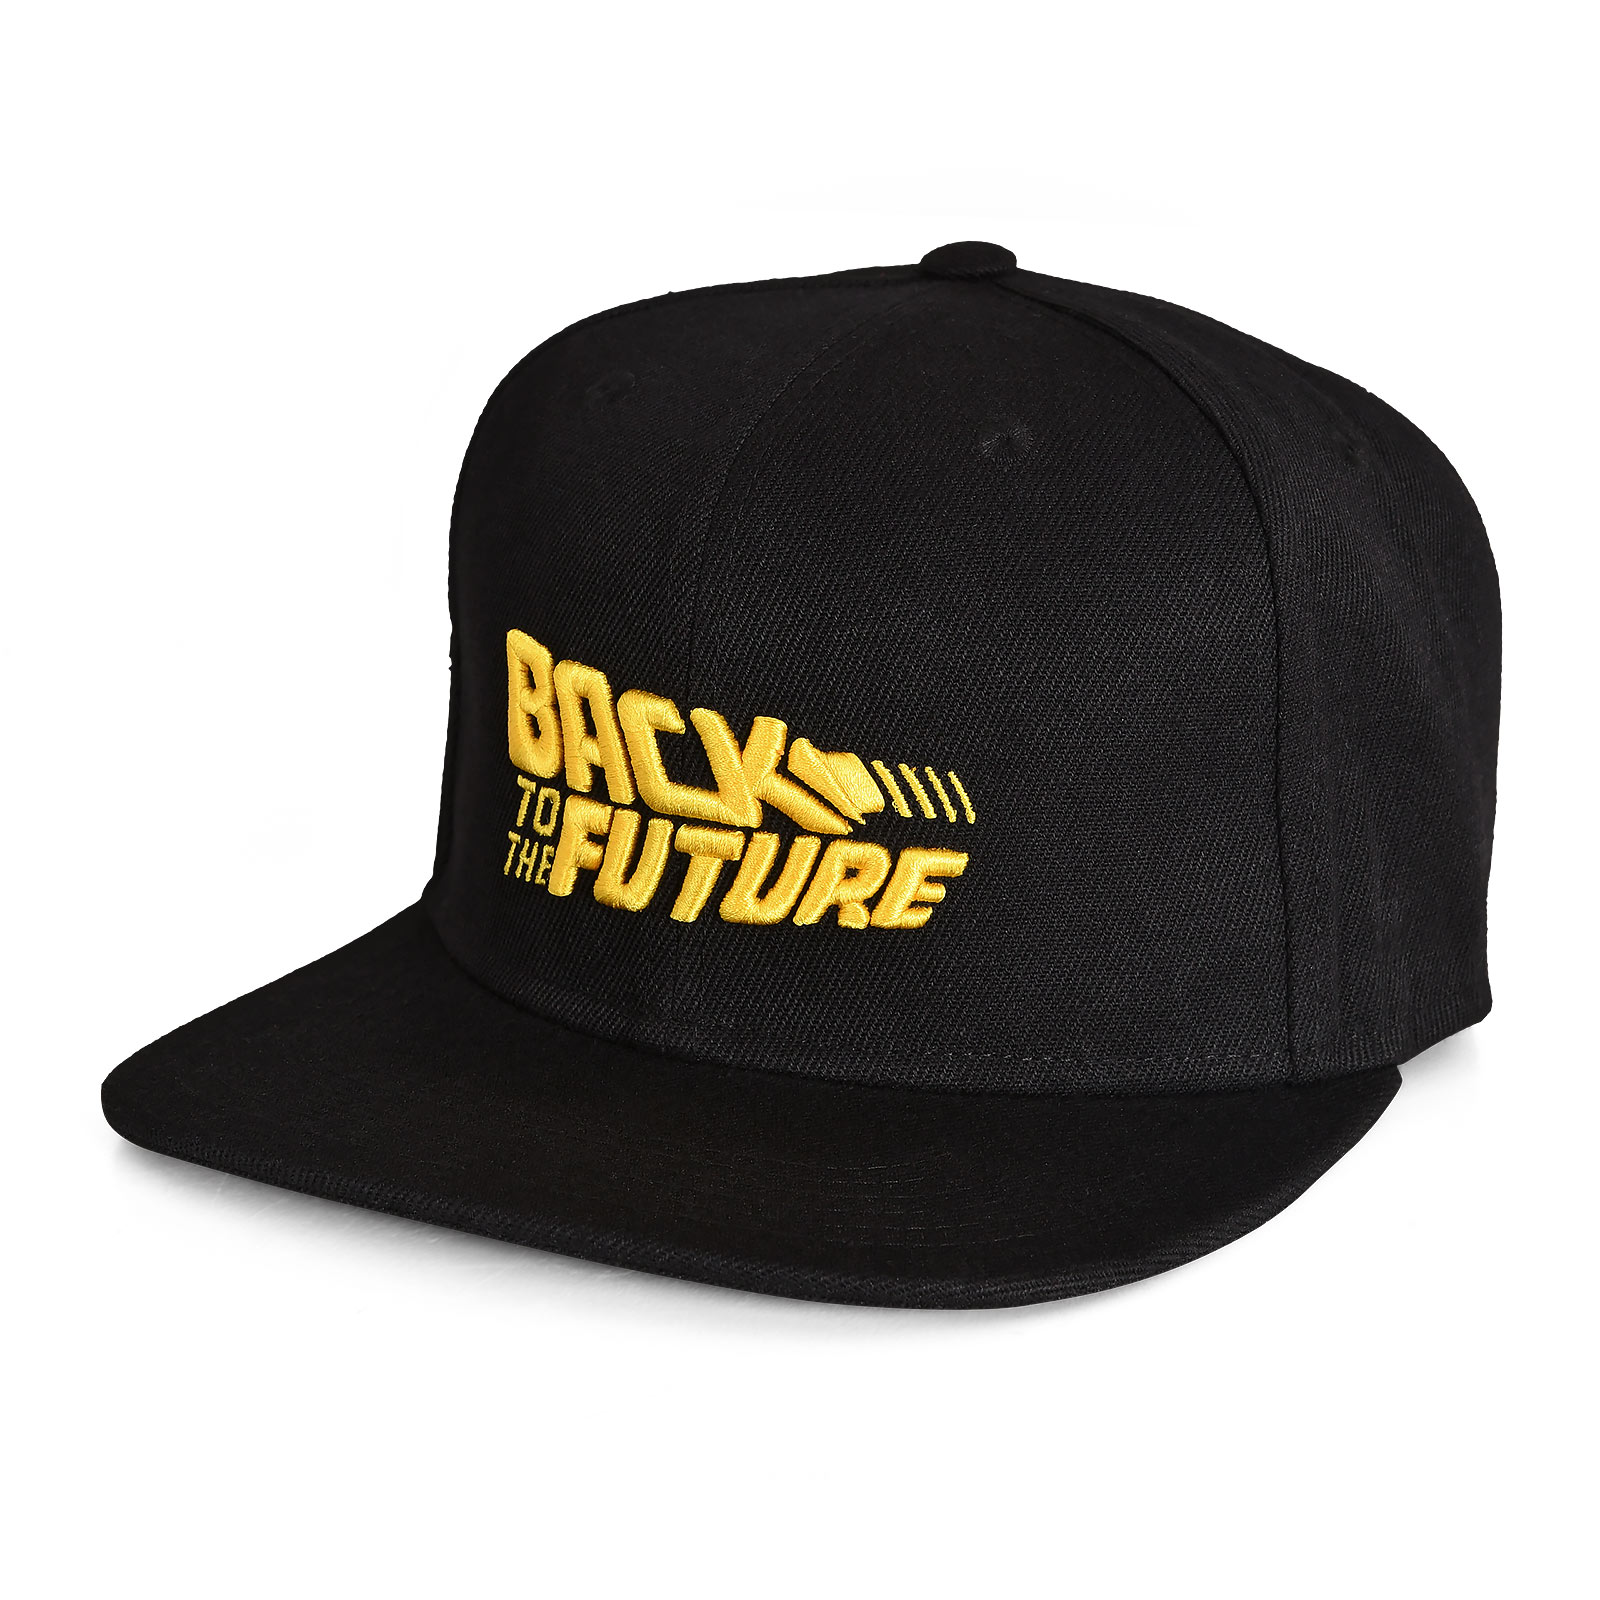 Back to the Future - Movie Logo Snapback Cap